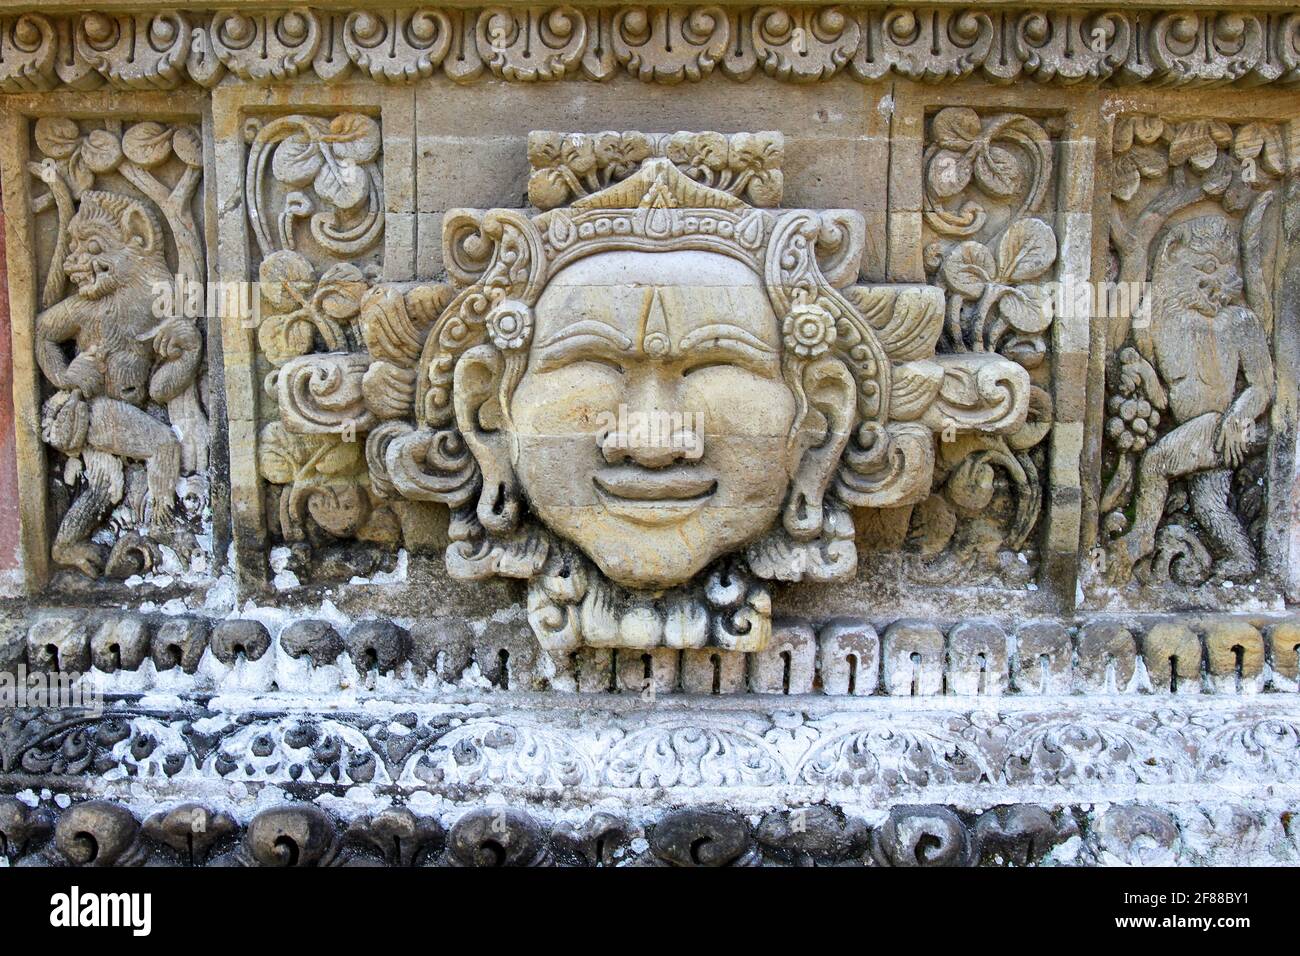 Talla tradicional en piedra de cara y monos en el templo de Bali, Indonesia Foto de stock